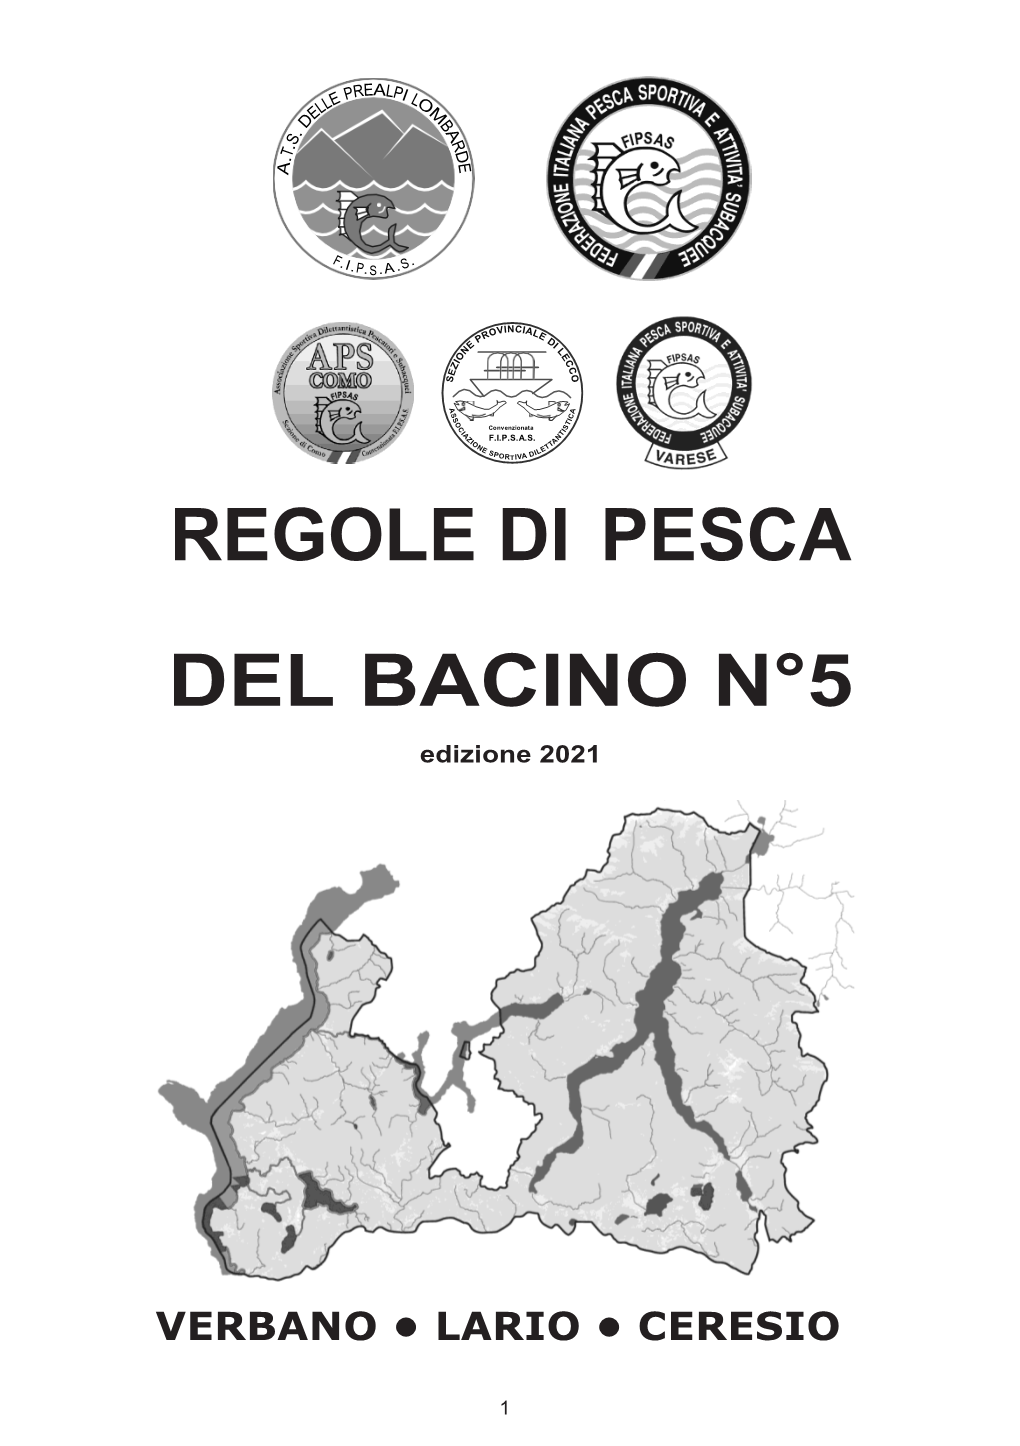 REGOLE DI PESCA DEL BACINO N°5 Edizione 2021